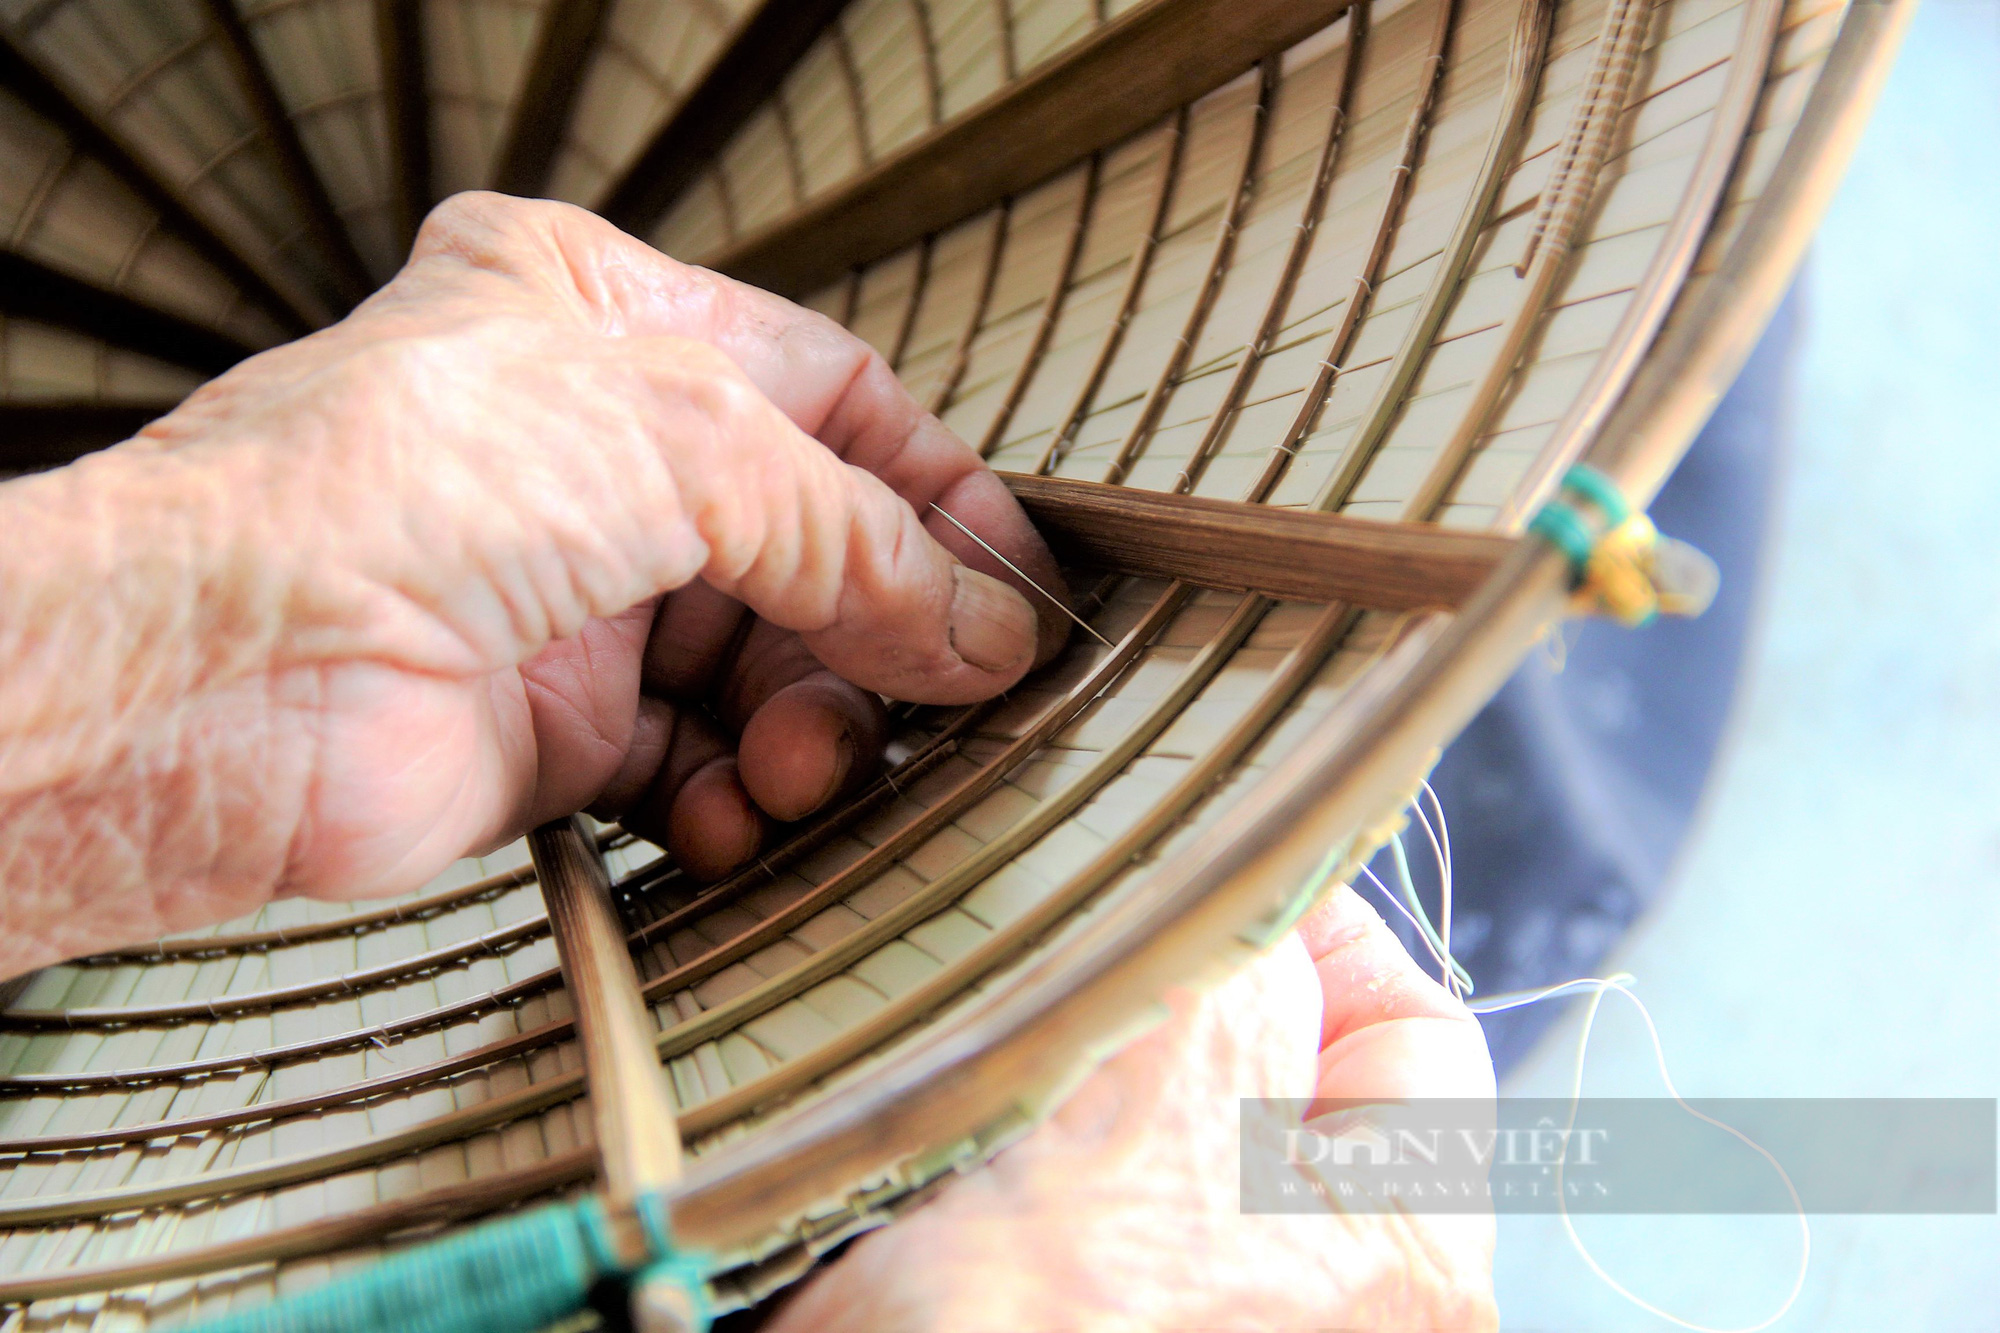 Hà Tĩnh: Làng nghề nón lá Đan Du gần một thế kỷ, nơi giữ hồn quê đất Việt - Ảnh 9.